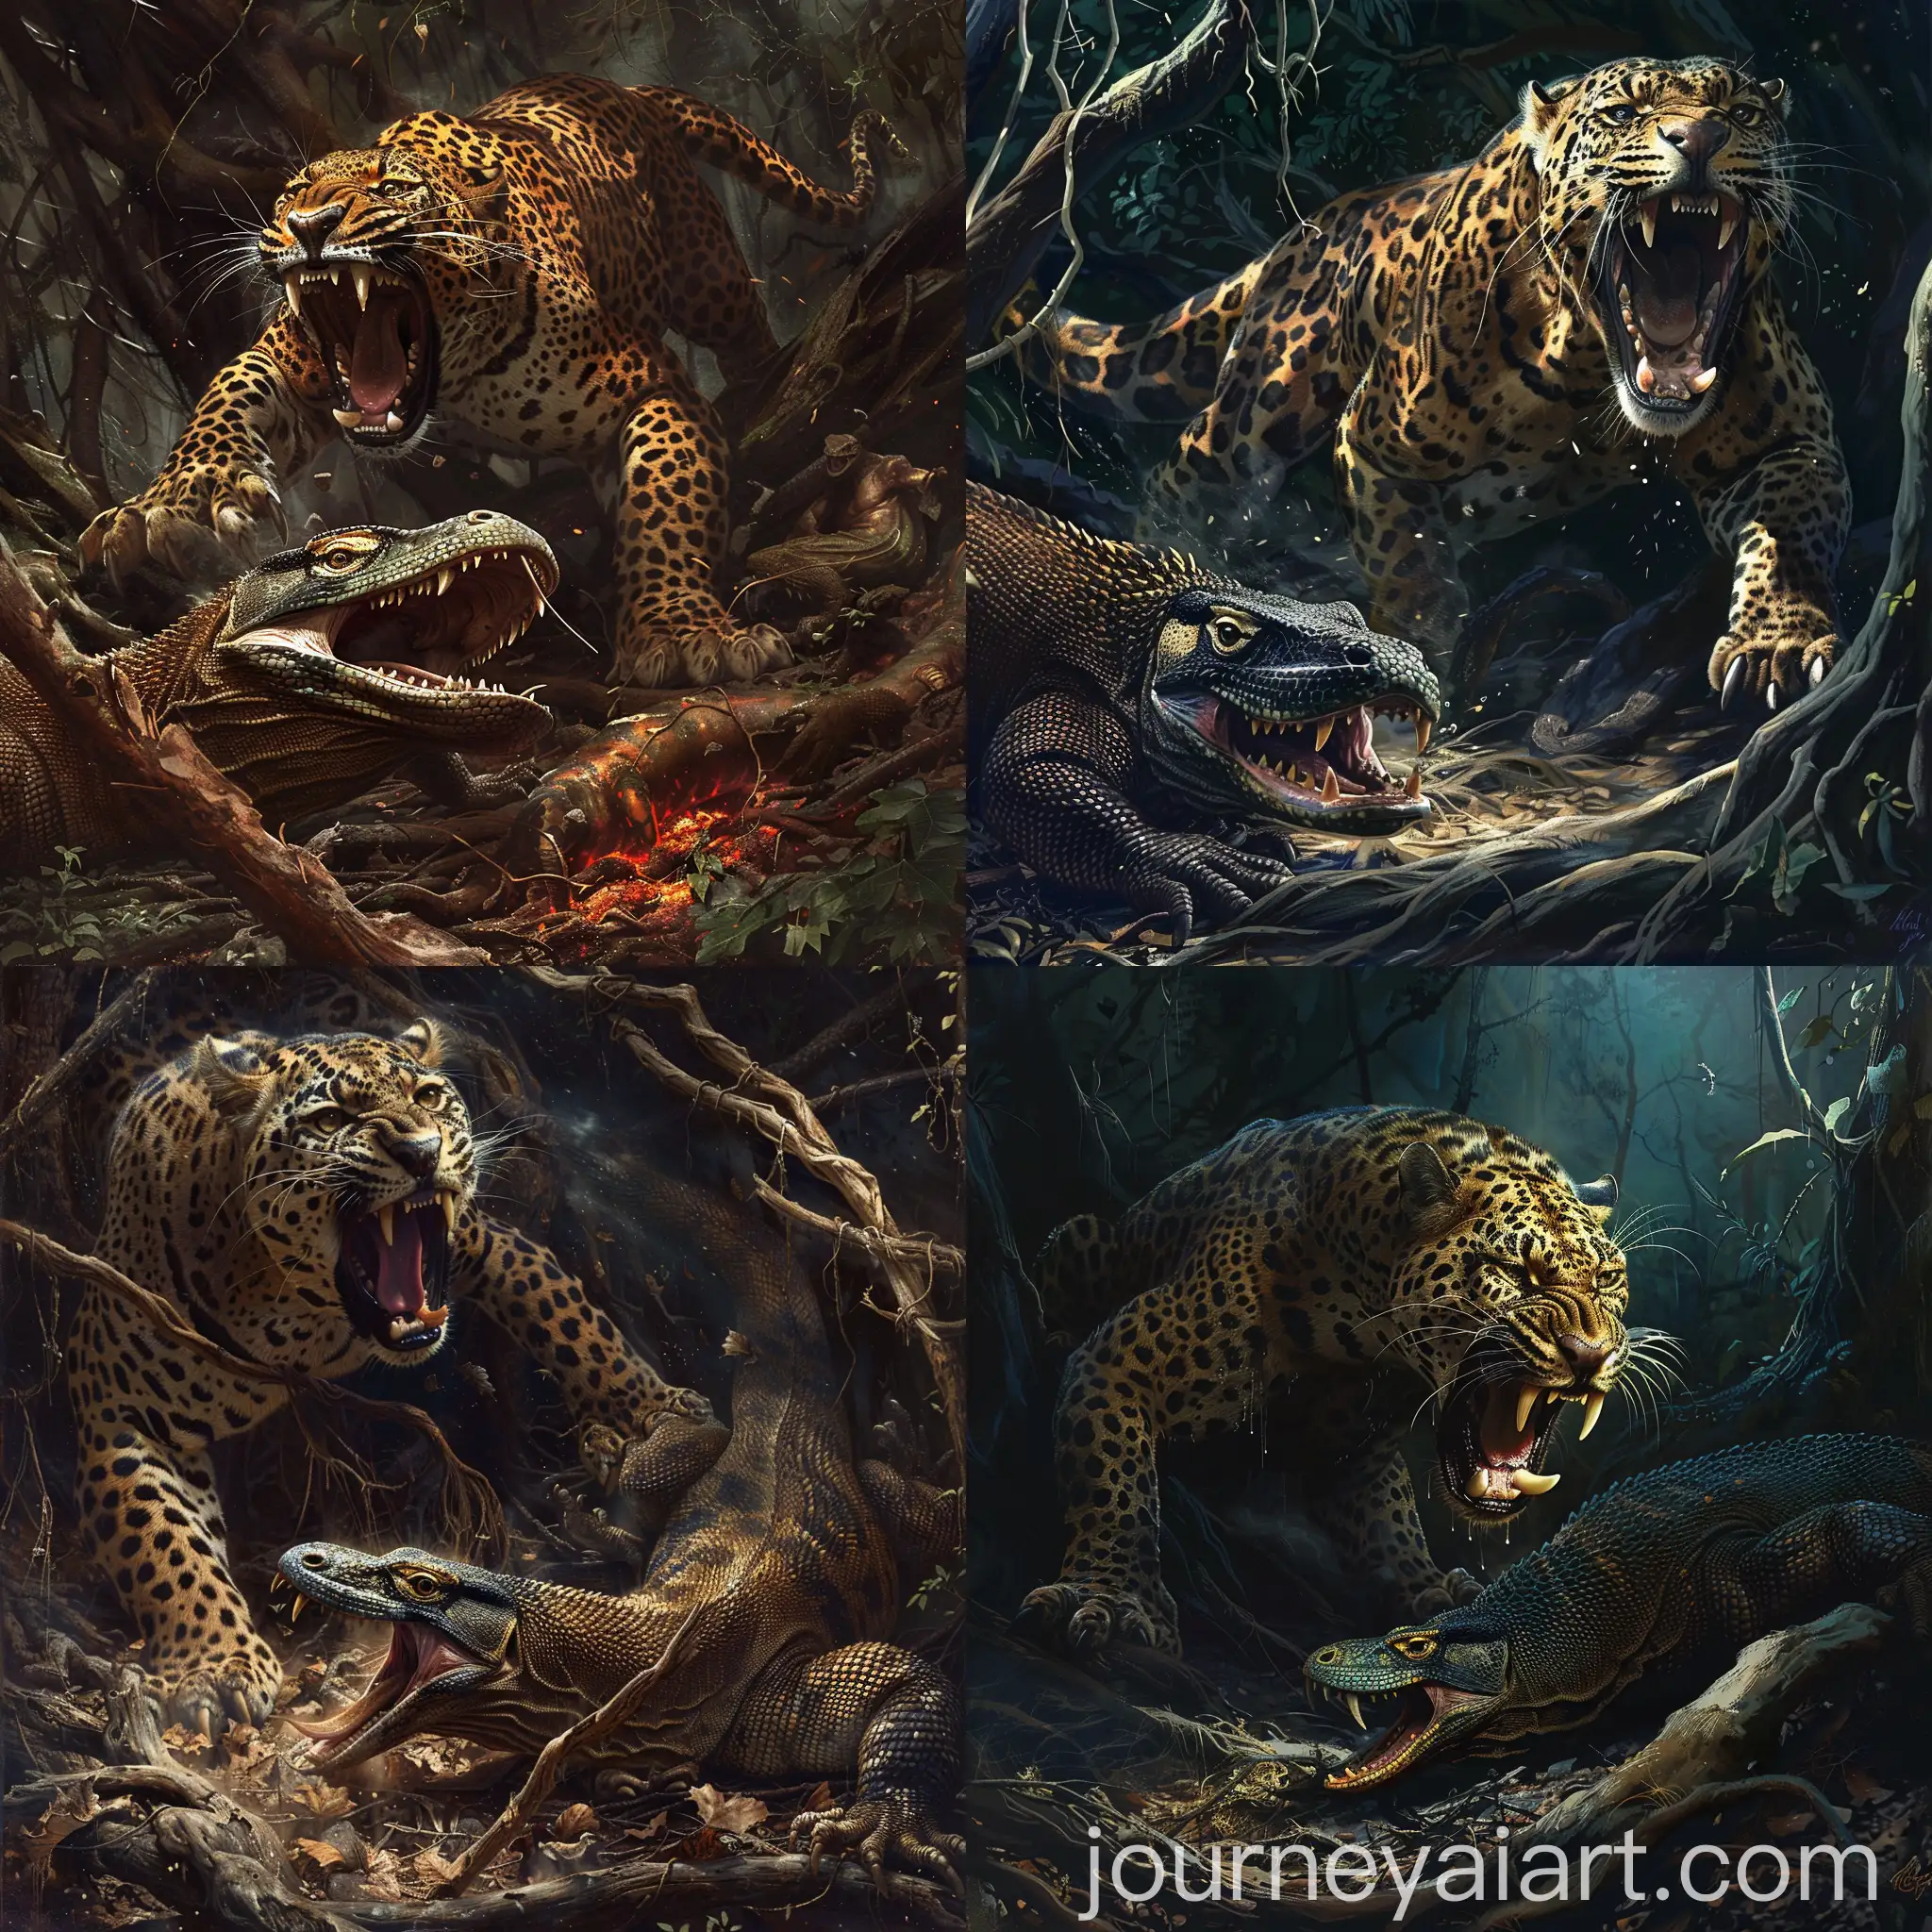 Fierce-Leopard-Roaring-Over-Komodo-Dragon-in-Dark-Forest